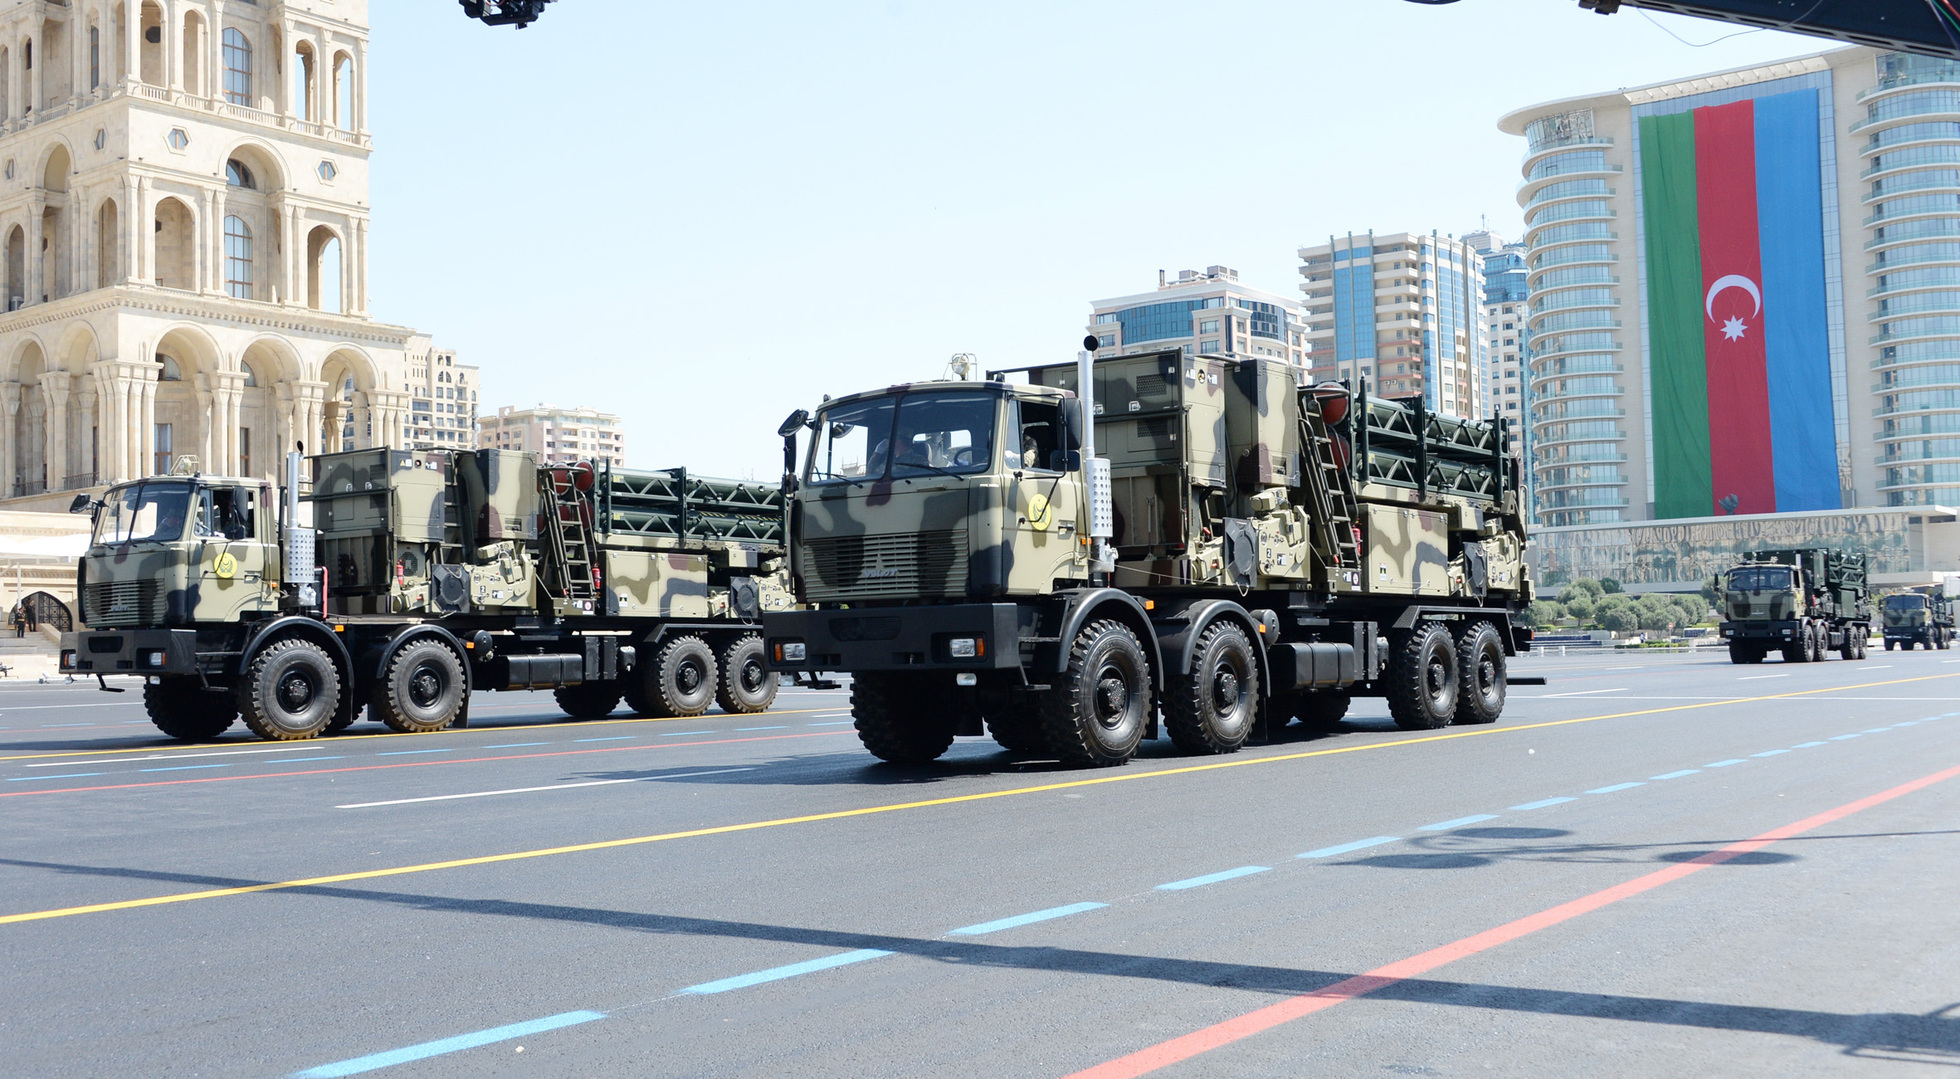 Military_parade_in_Baku_June_26,_2018_(2).jpg